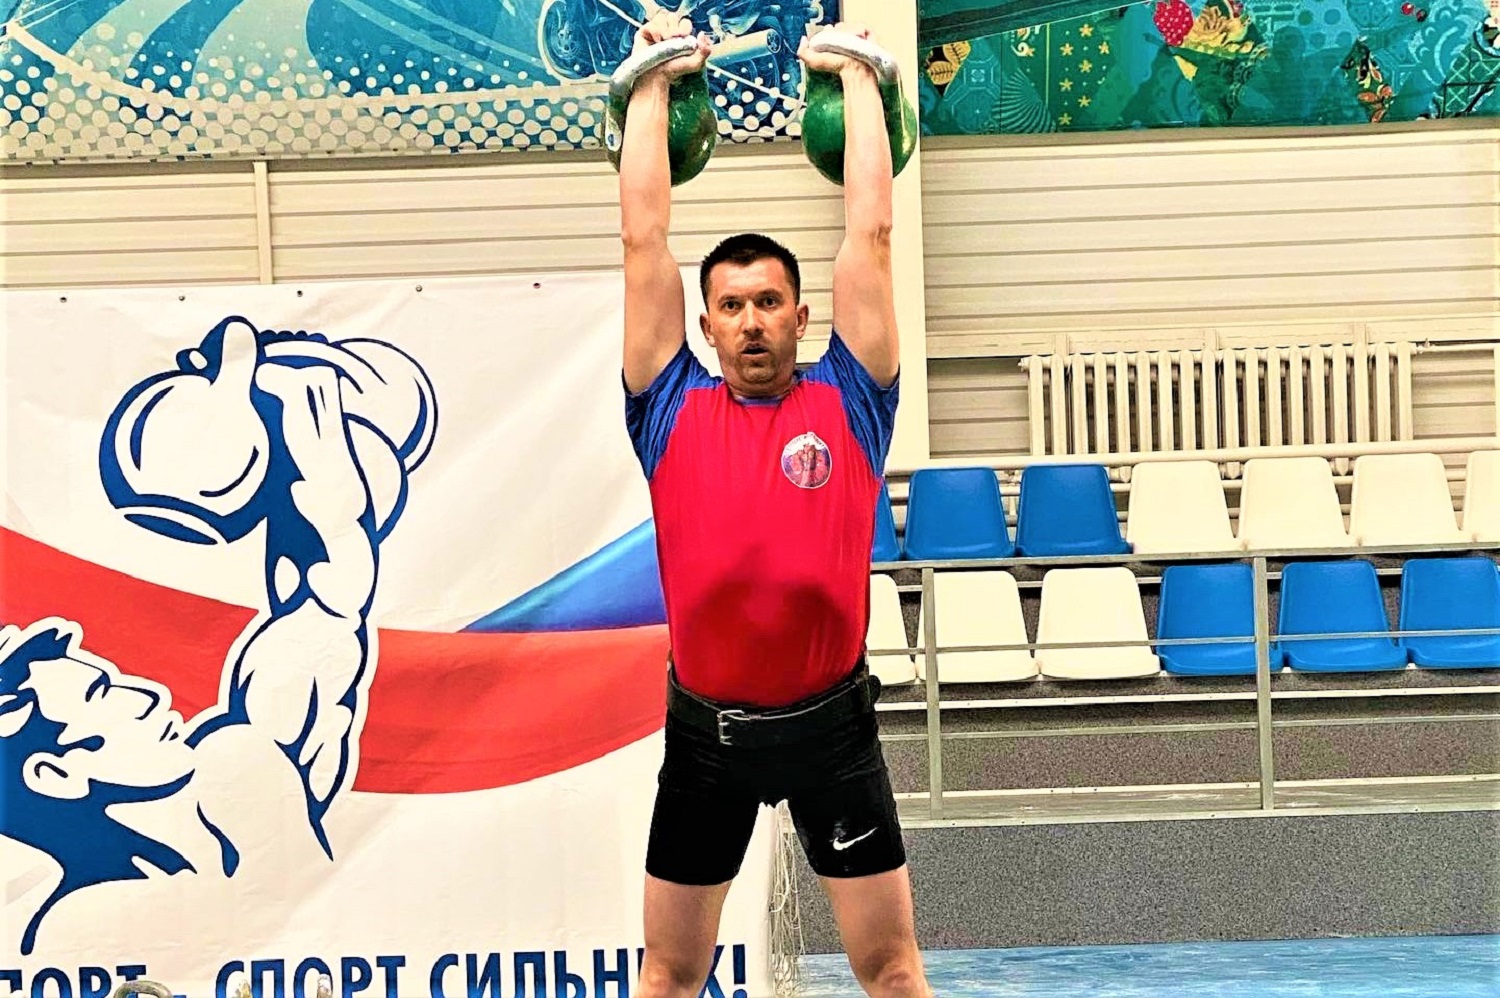 Гиревик разреза Пермяковский завоевал золотую медаль на региональных соревнованиях. Стройсервис